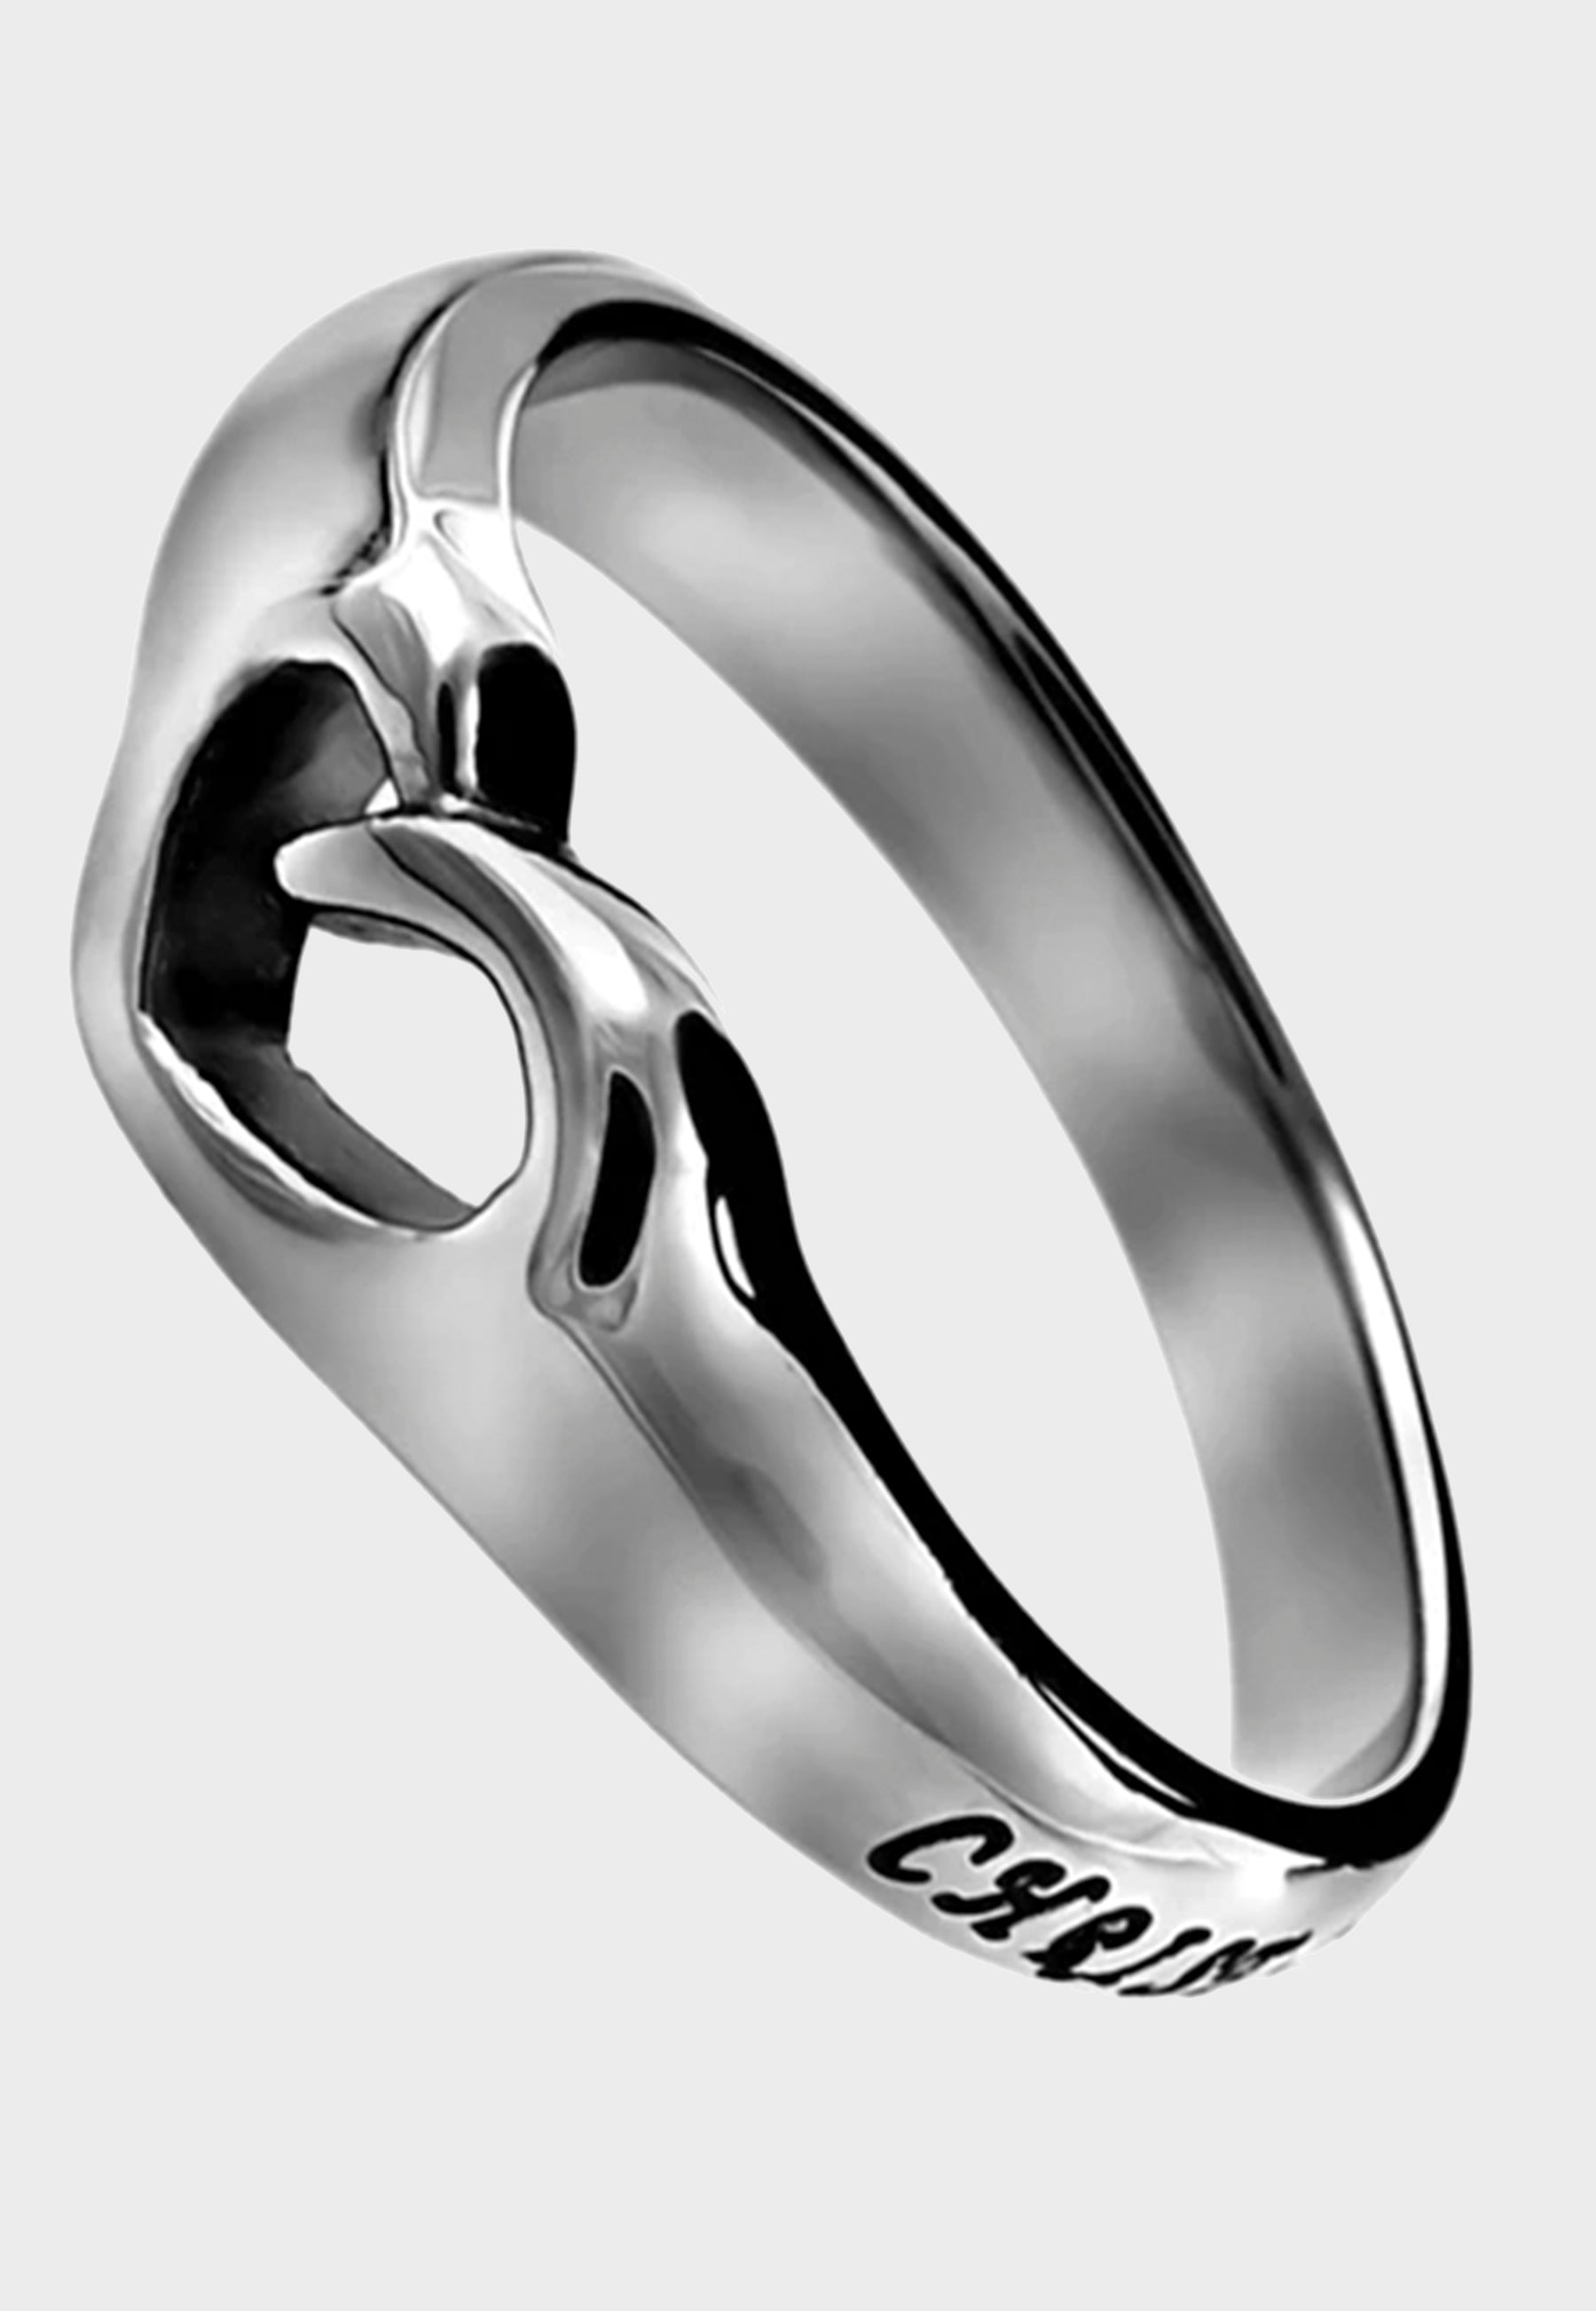 Women's Christian mini heart ring